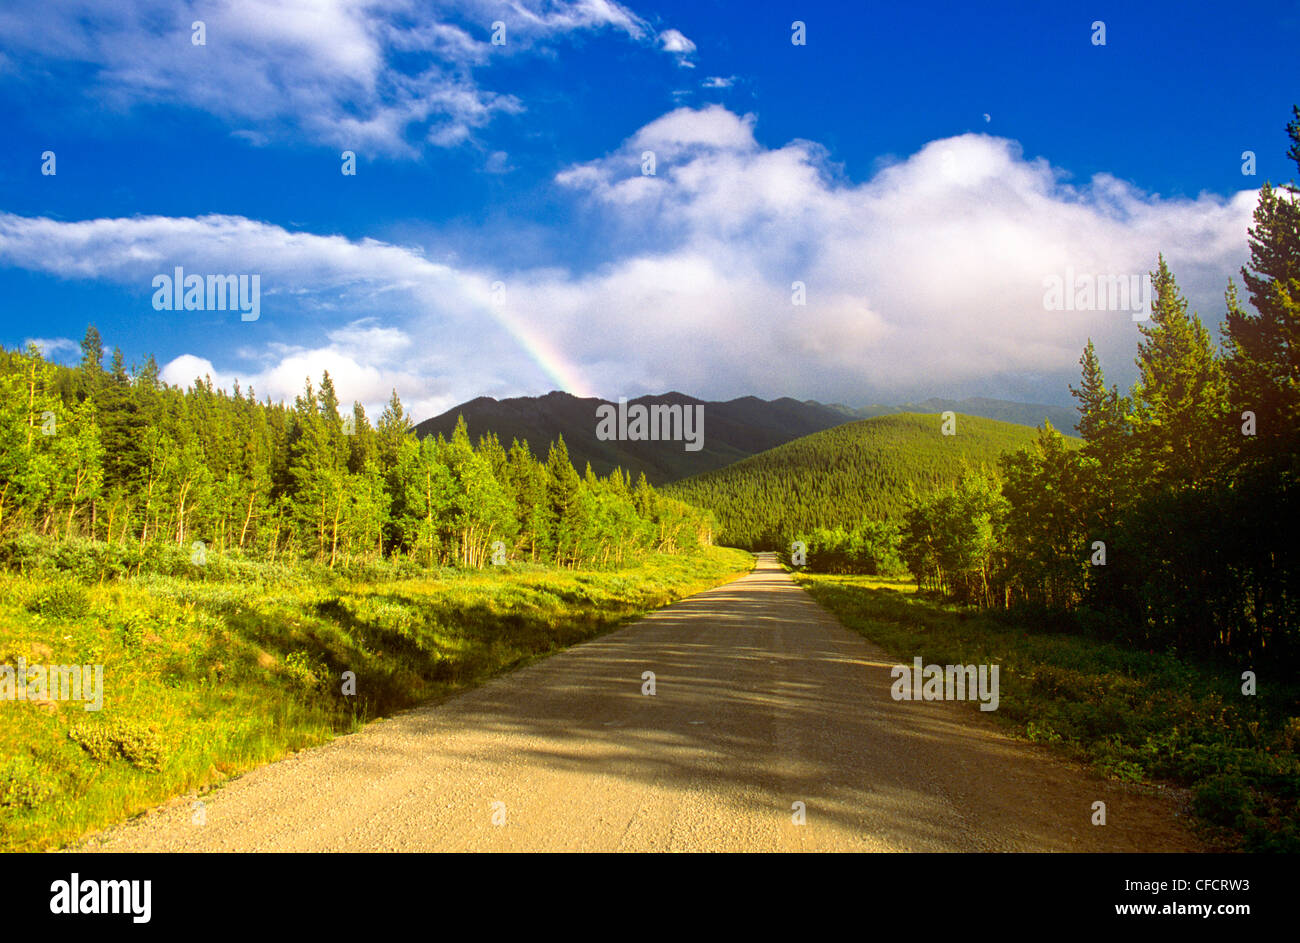 Rainbow over dirt road, Kananaskis County, Alberta, Canada Stock Photo